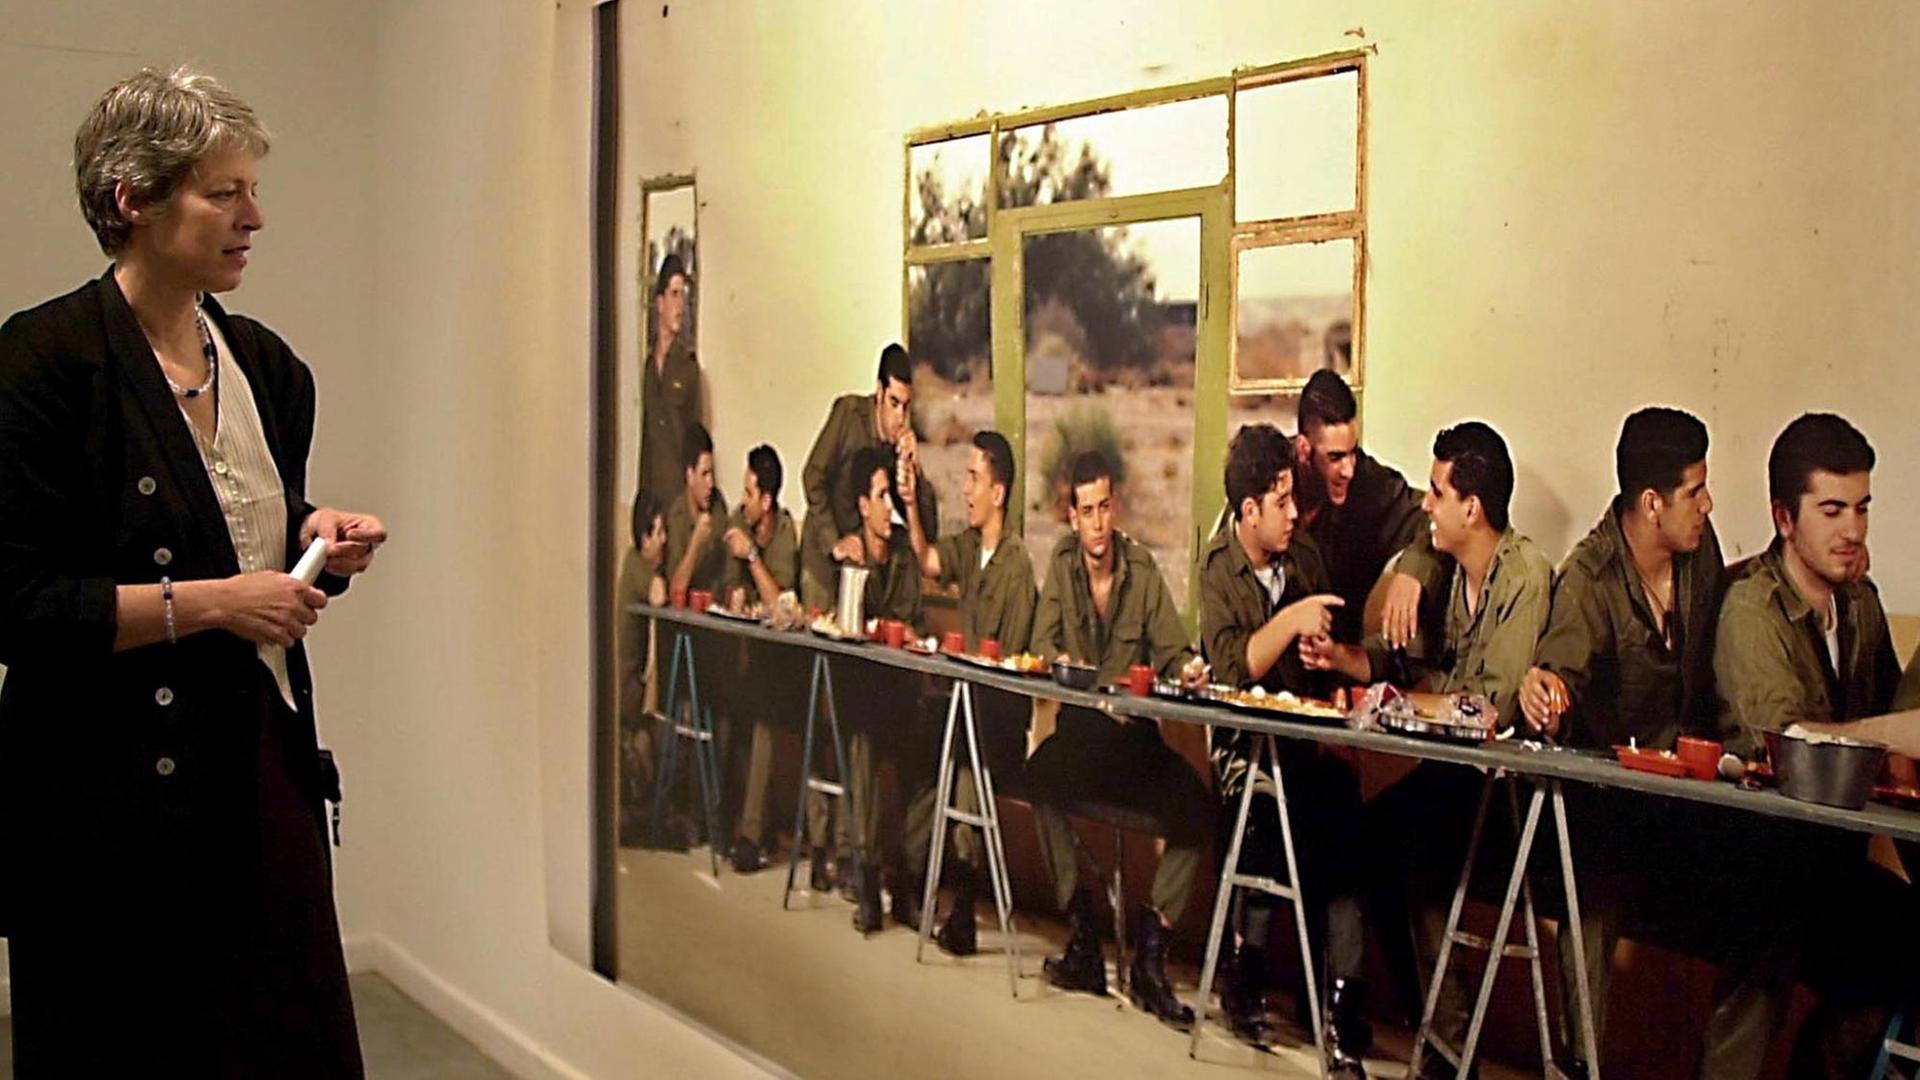 Die Fotografie "Das Abendmahl" des israelischen Künstlers Adi Nes